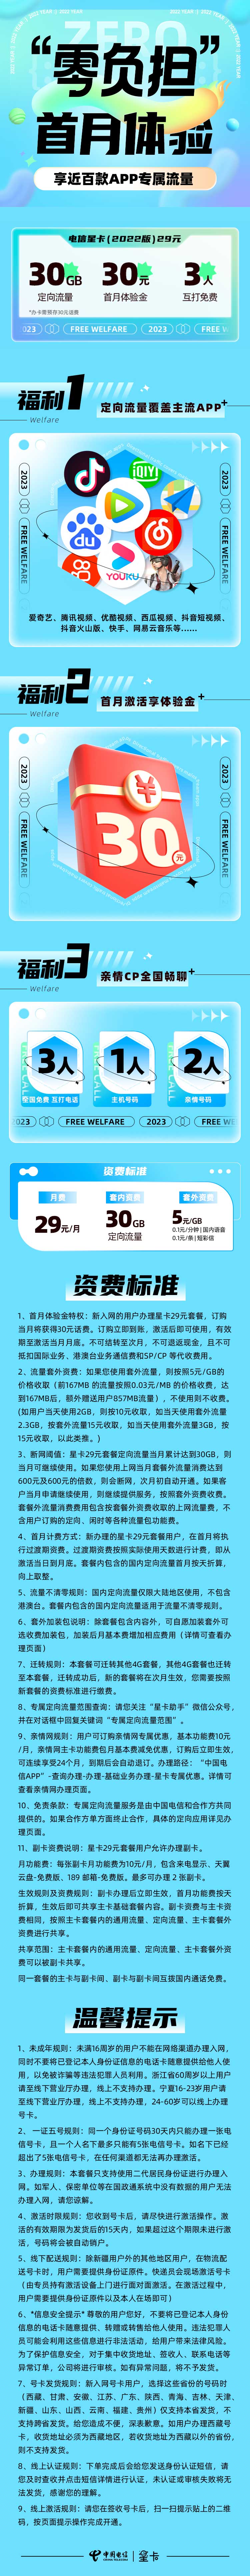 中国电信 星卡 全年360G大流量 覆盖抖音、快手等近百款APP专属免流 4G电话卡 低月租 流量卡 手机 号卡